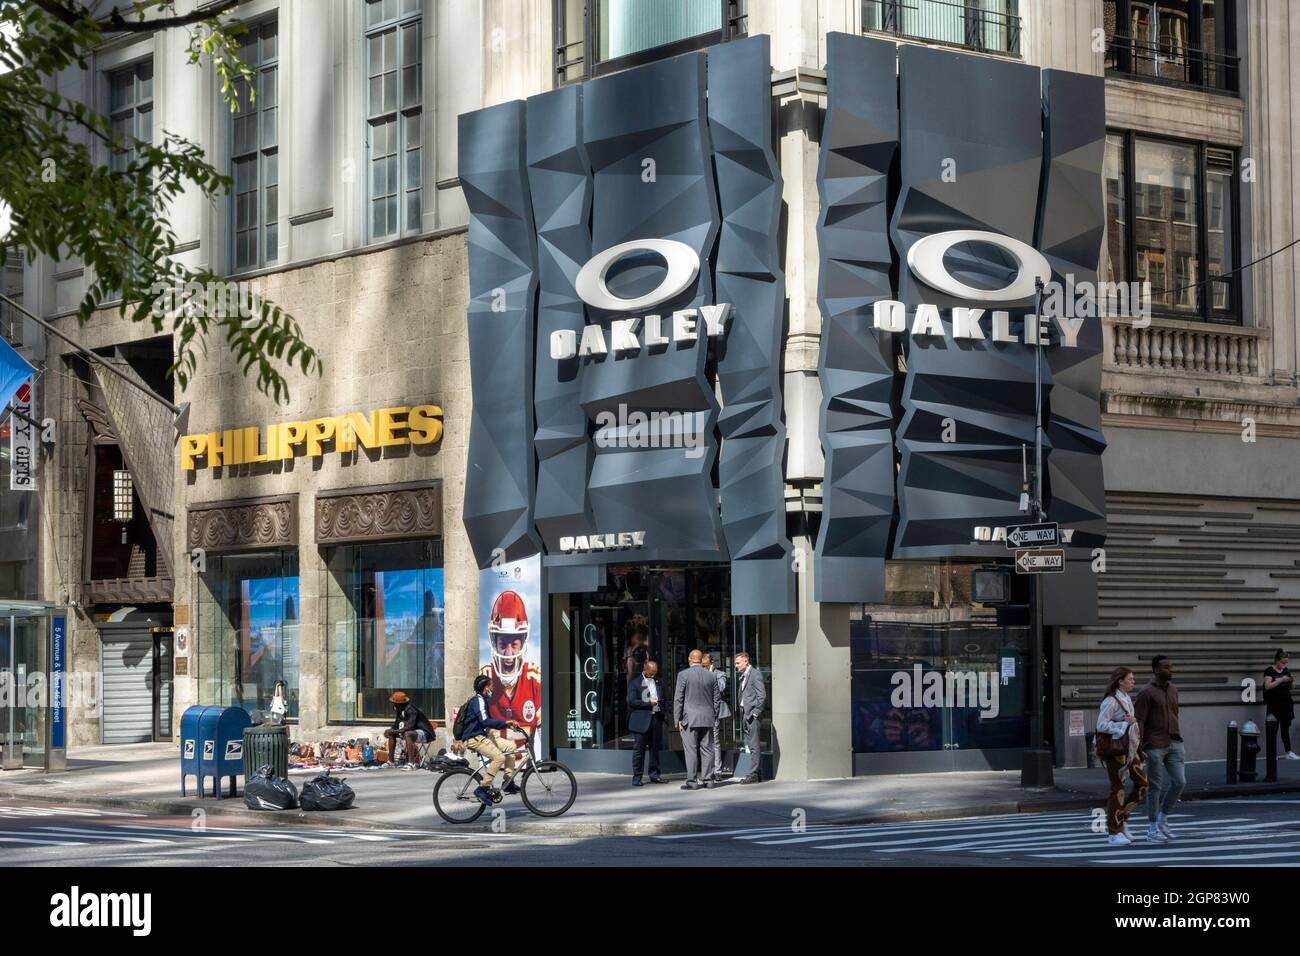 Oakley - 5th Avenue, New York - Accessories Store